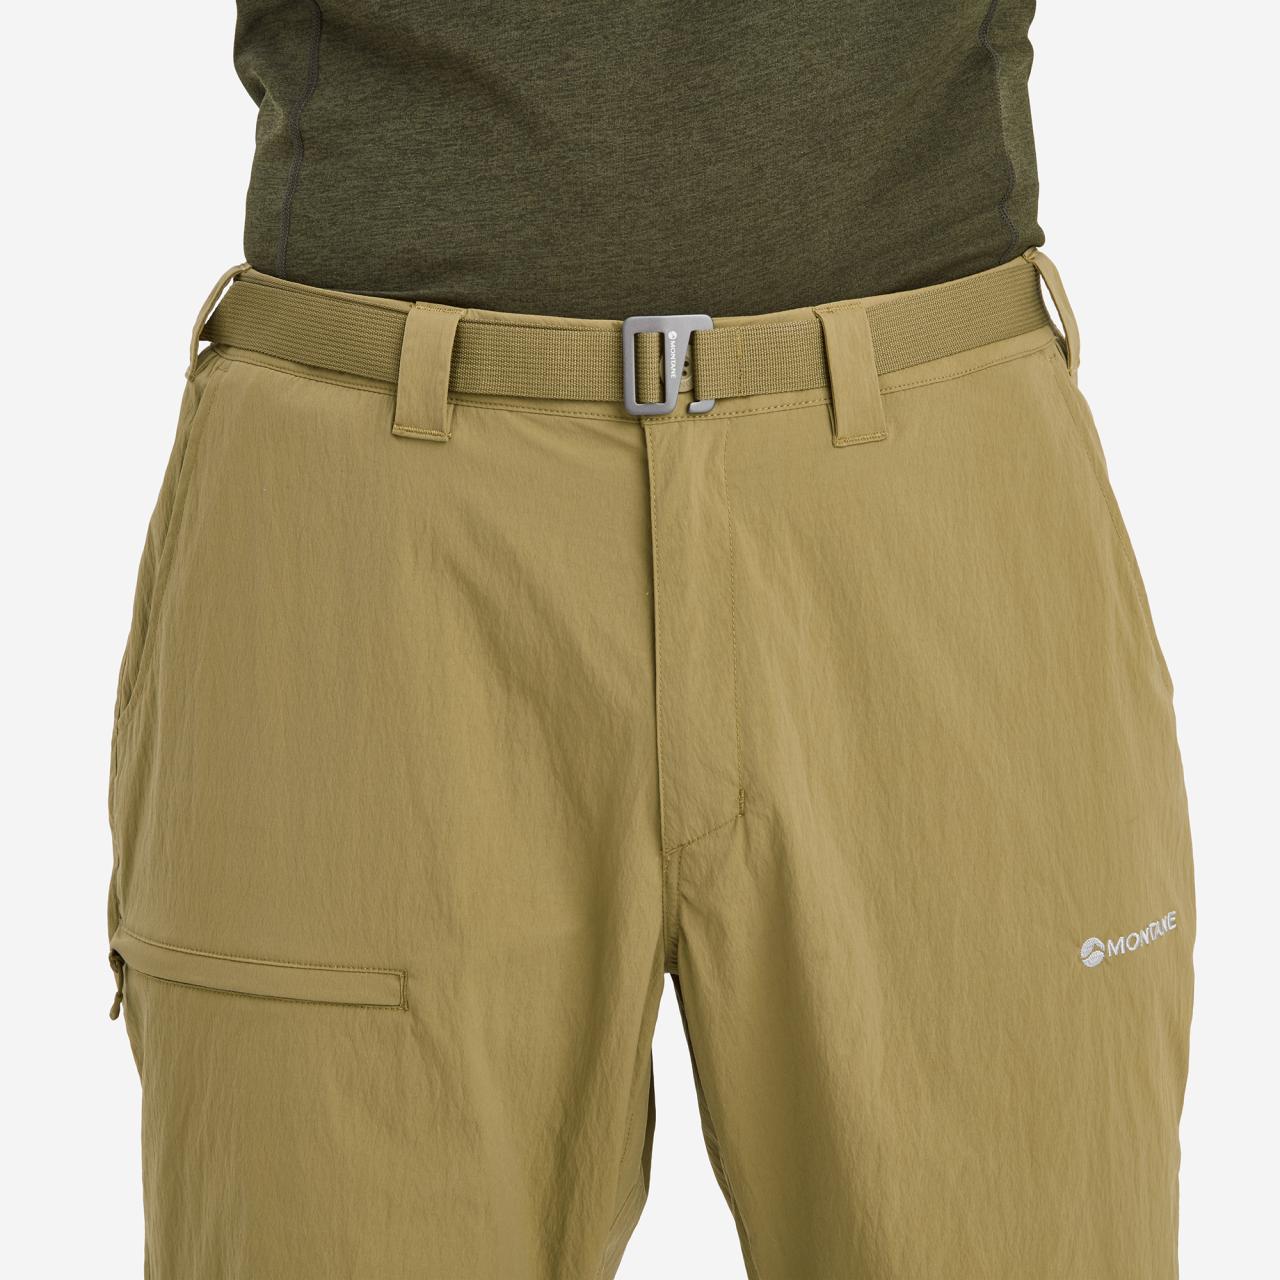 TERRA LITE PANTS REG LEG-OLIVE-36/XL pánské kalhoty zelené